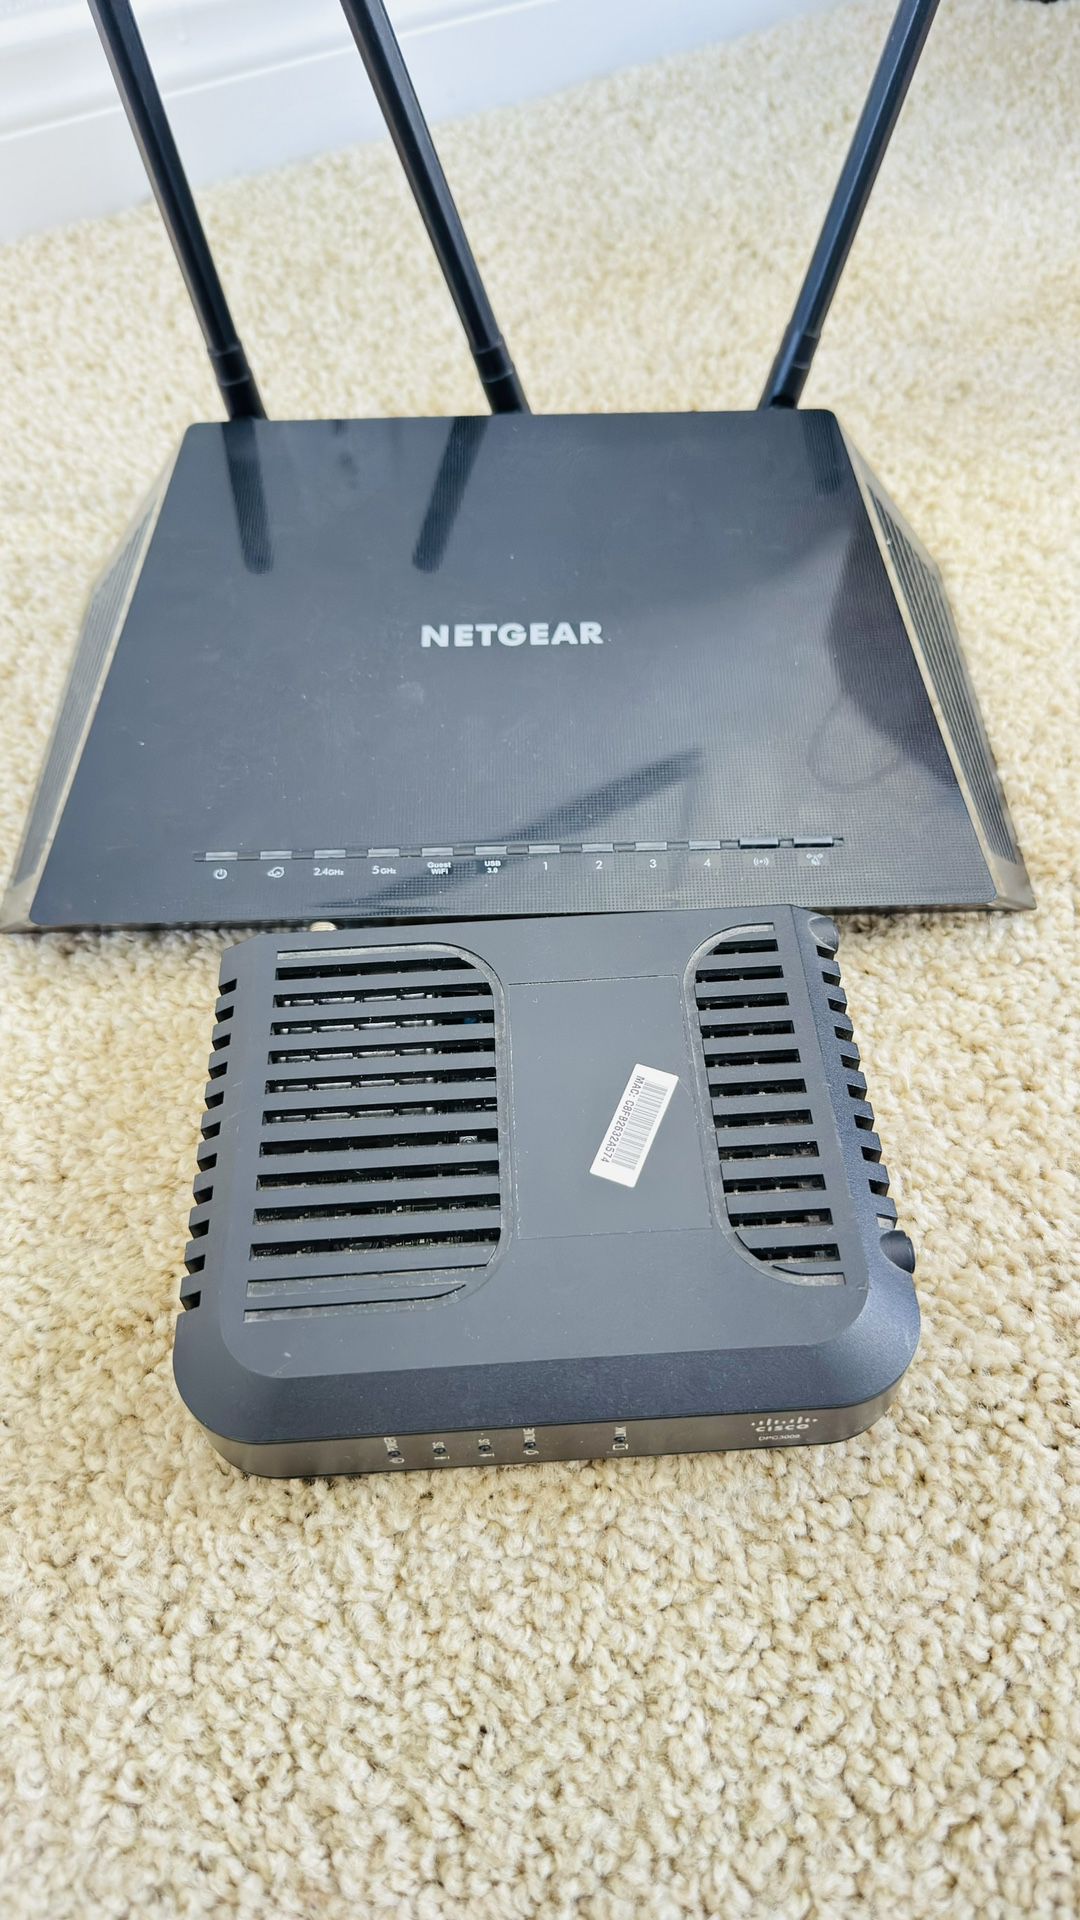 Netgear nighthawk Router & Cisco Modem